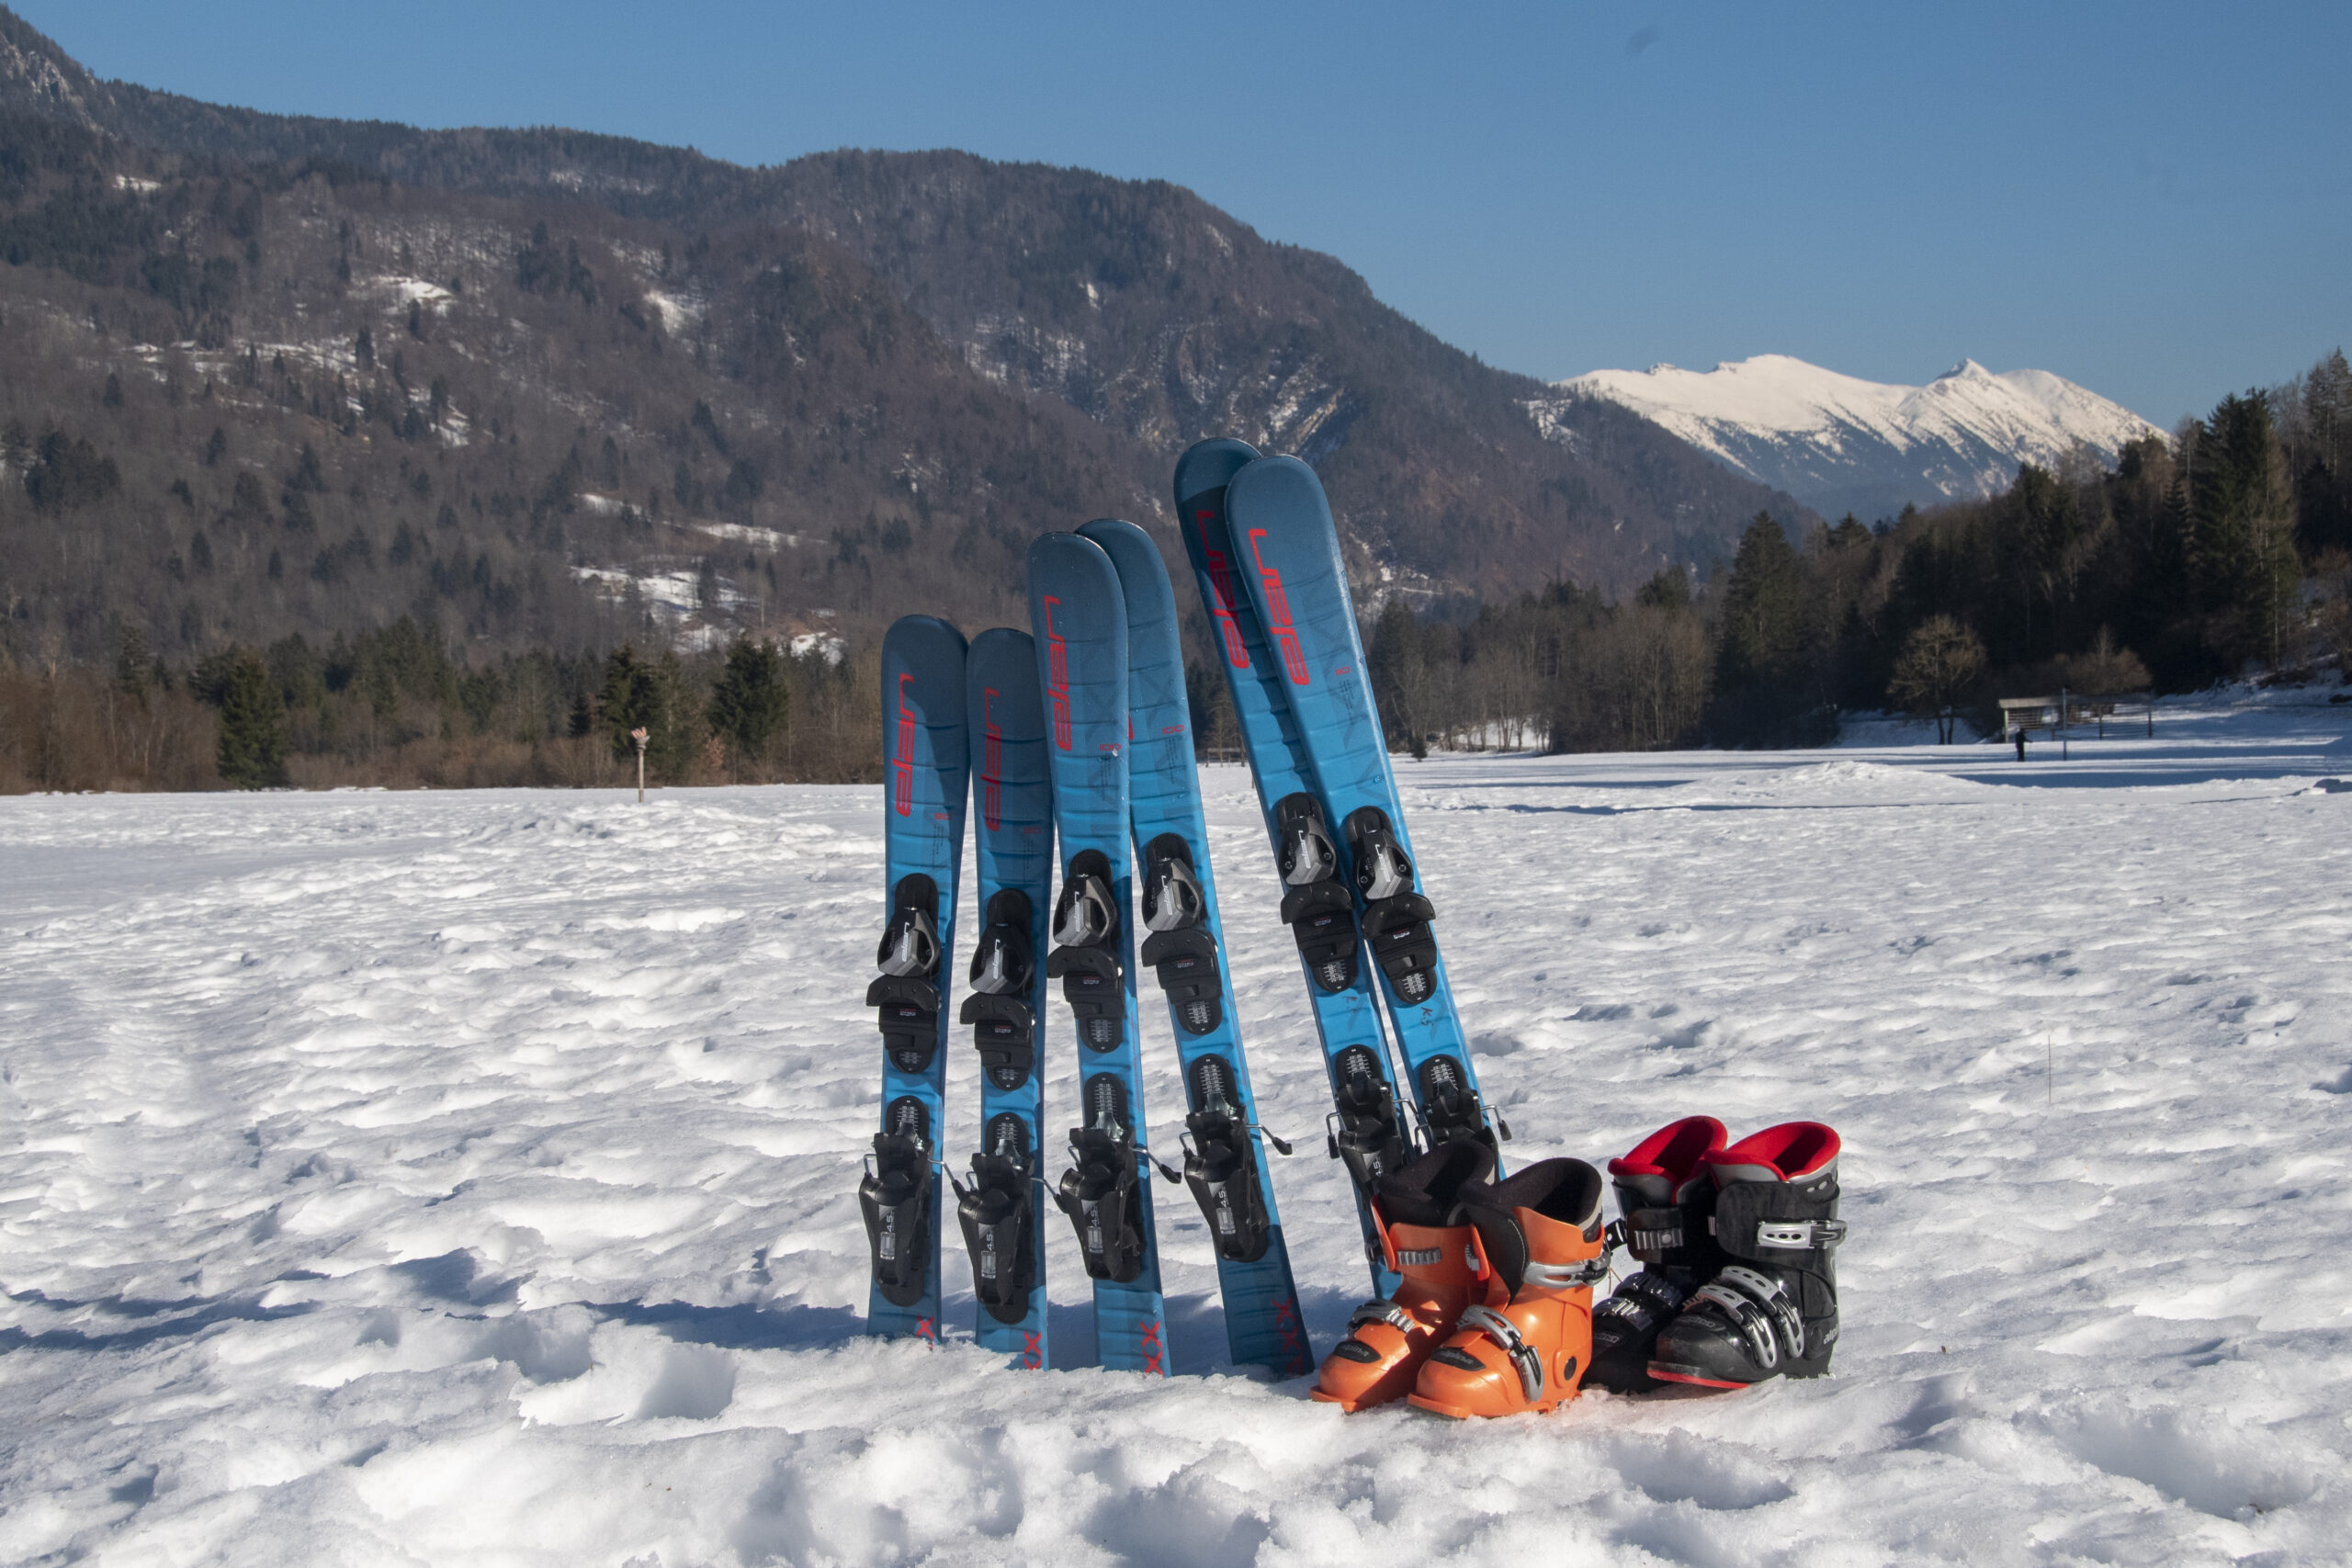 Children's equipment for alpine skiing for rental.